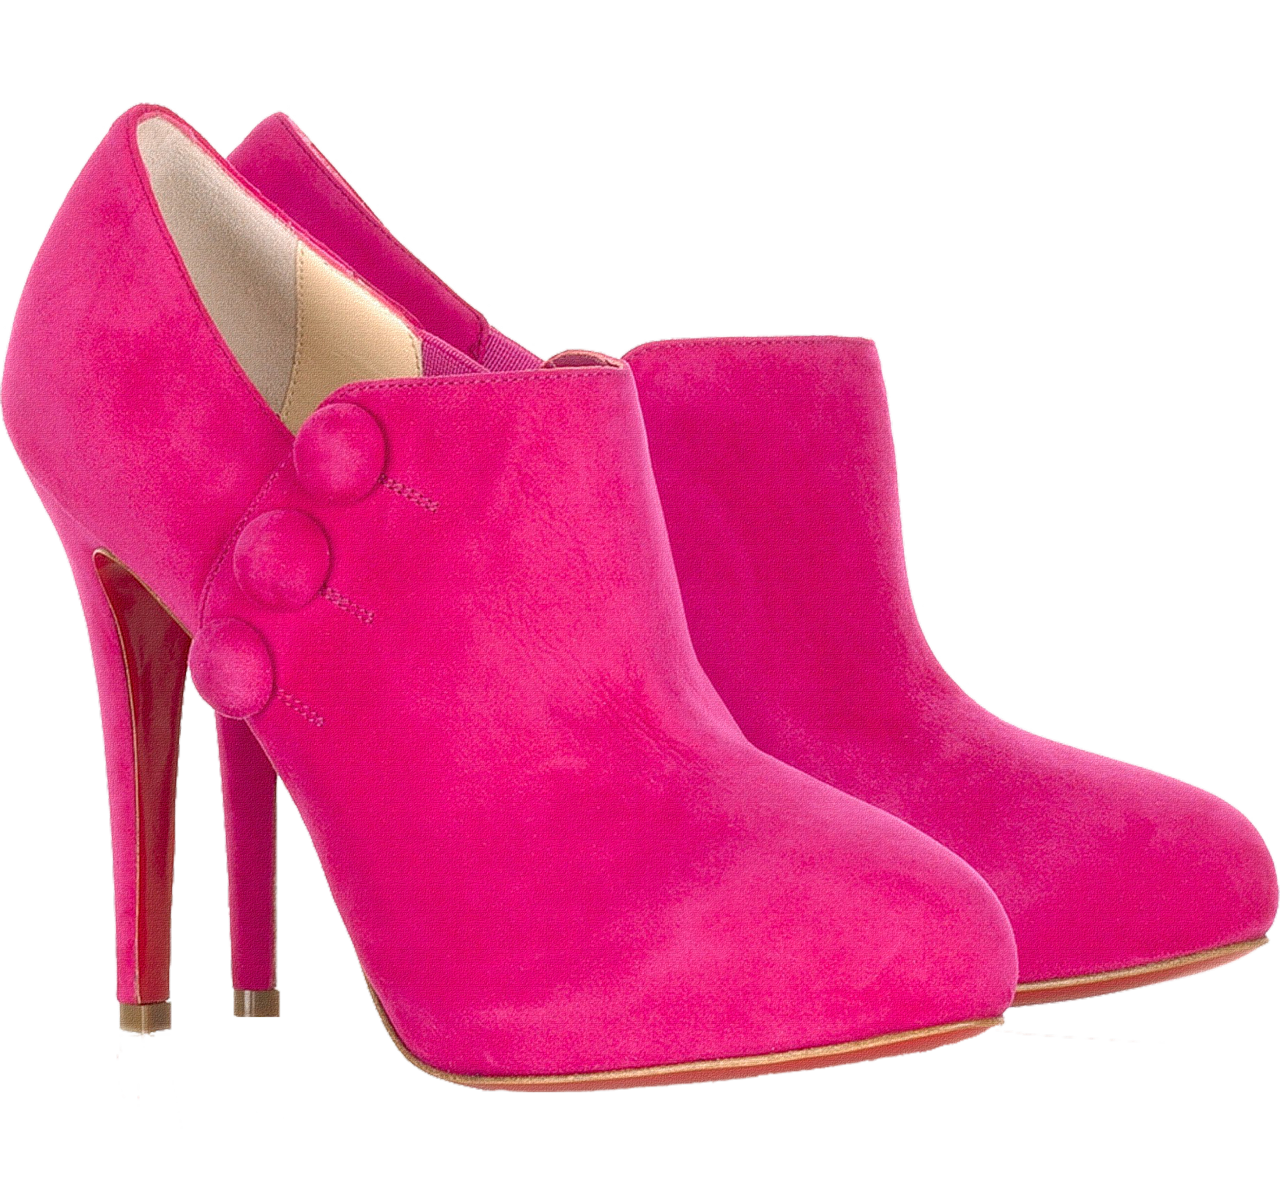 Download PNG image - Pink High Heels Shoe Transparent Background 